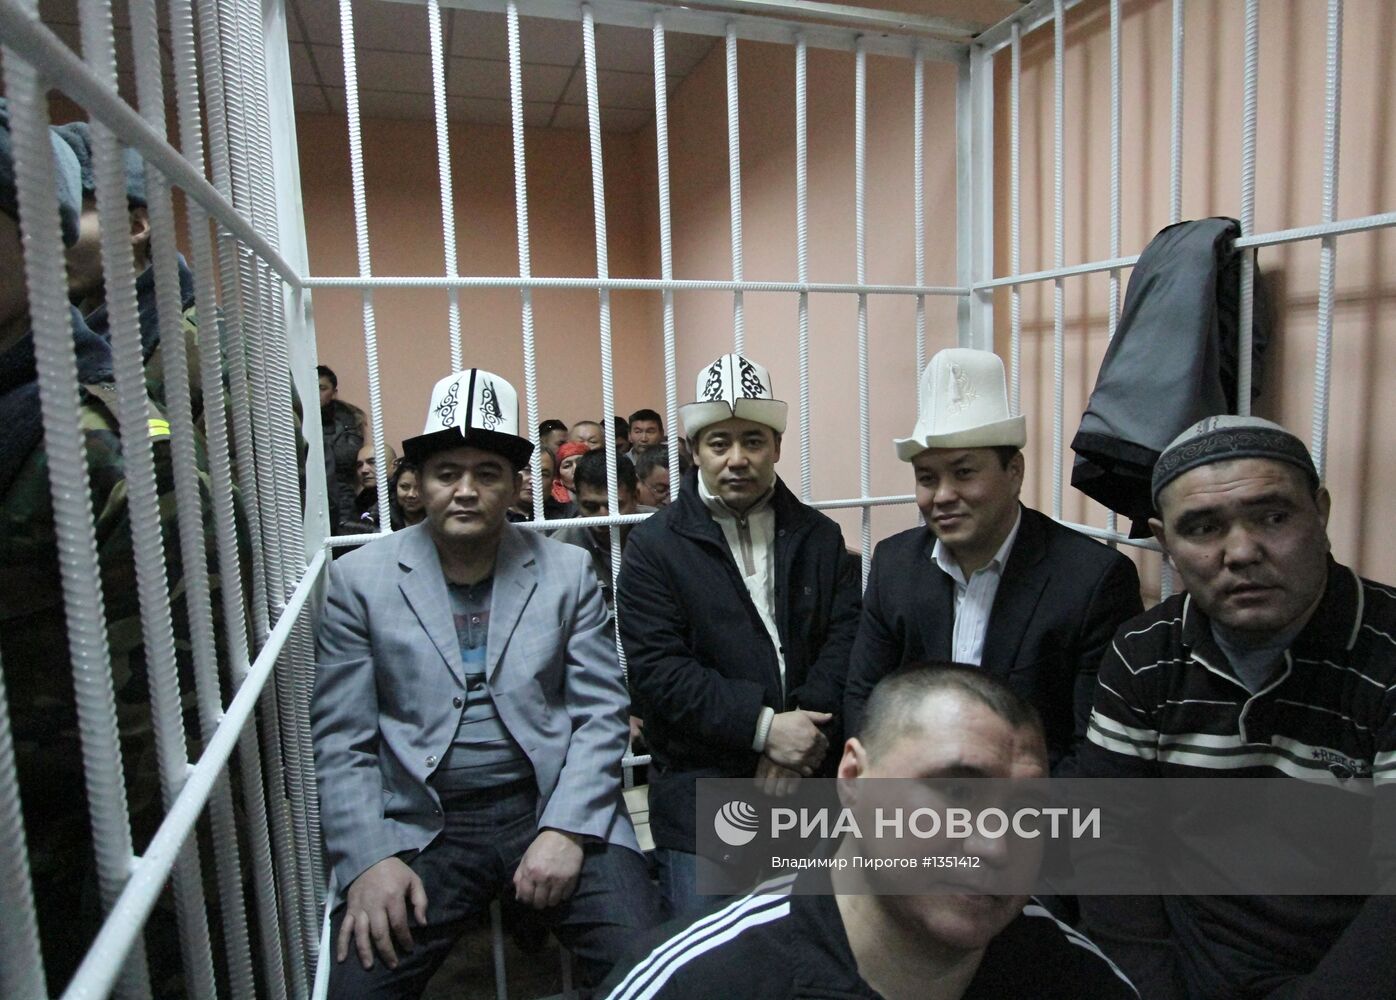 Суд оставил под стражей обвиняемых в захвате власти в Киргизии